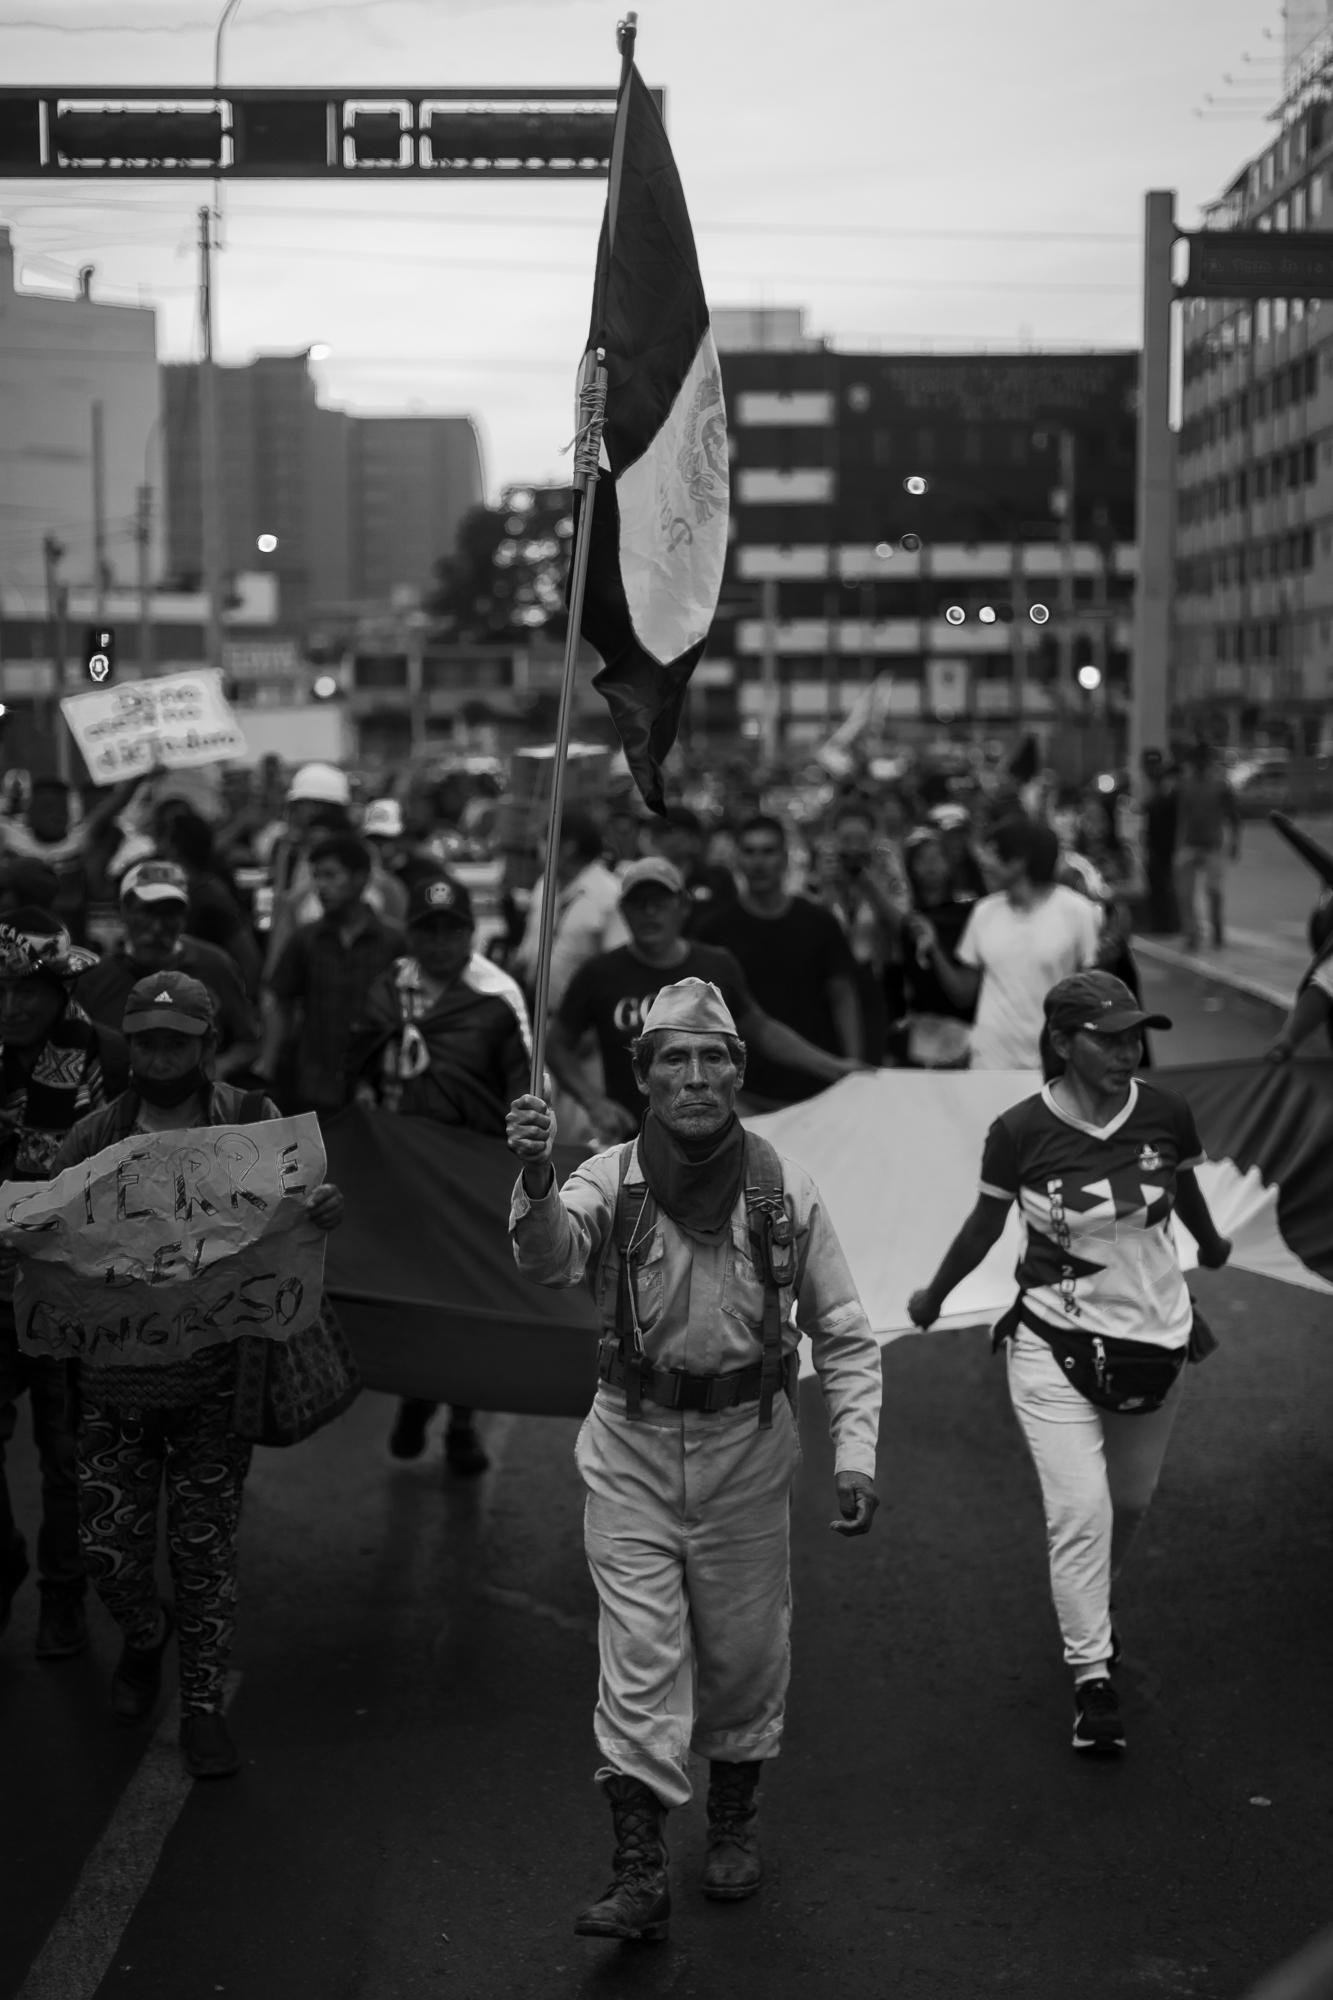 Crisis sin fin: La calle y la caótica política peruana - 